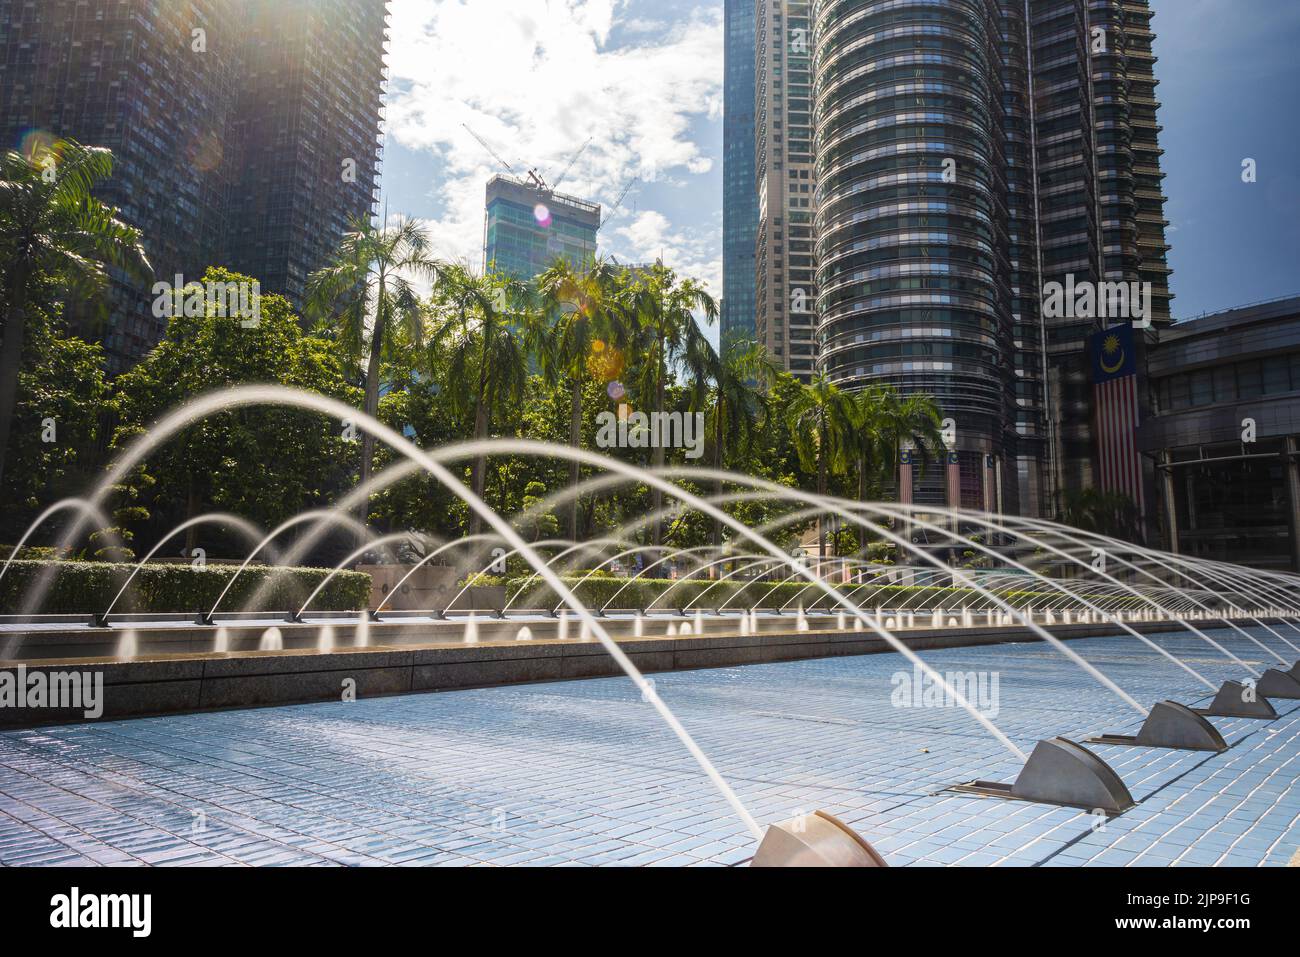 Kuala Lumpur, Malaisie - 13 août 2022: Le parc KLCC avec le spectacle de la fontaine en face des tours Petronas. Exposition longue avec de l'eau soyeuse j Banque D'Images